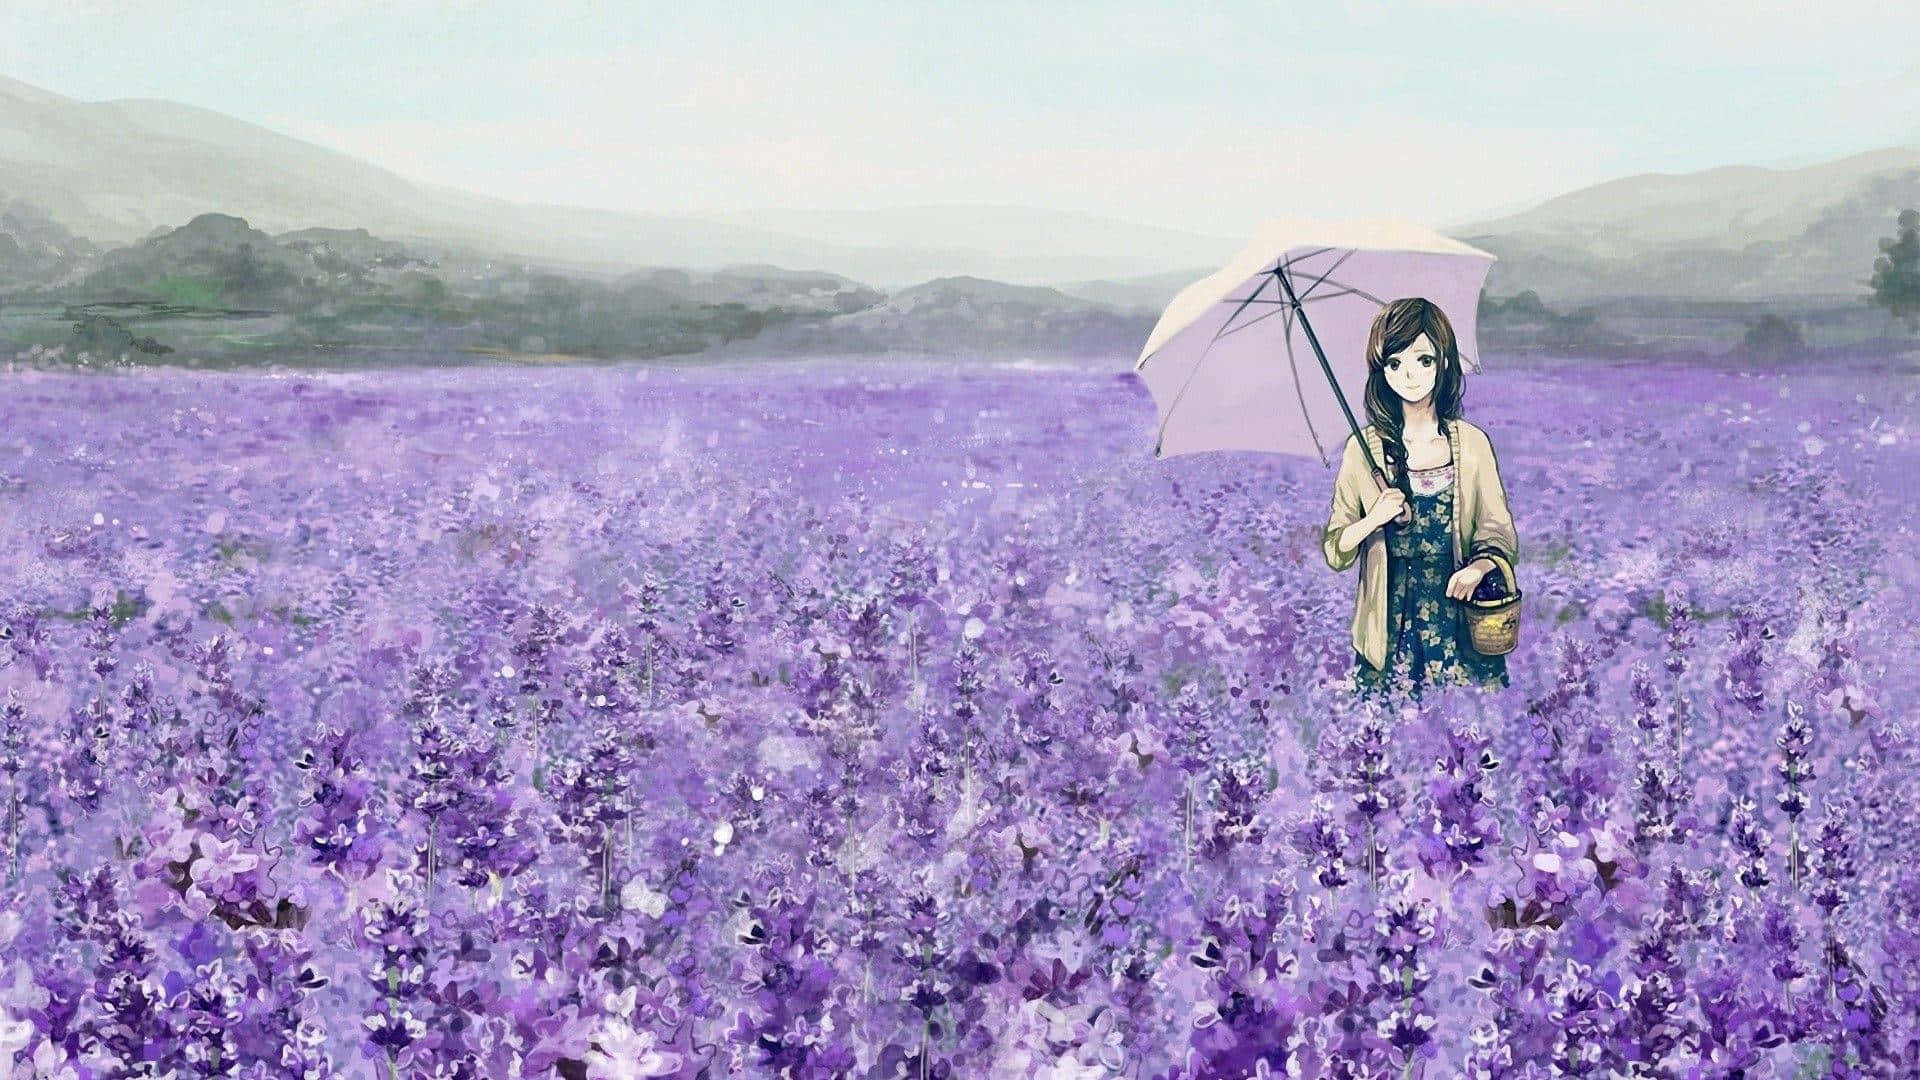 Pretty Purple Field Of Lavender